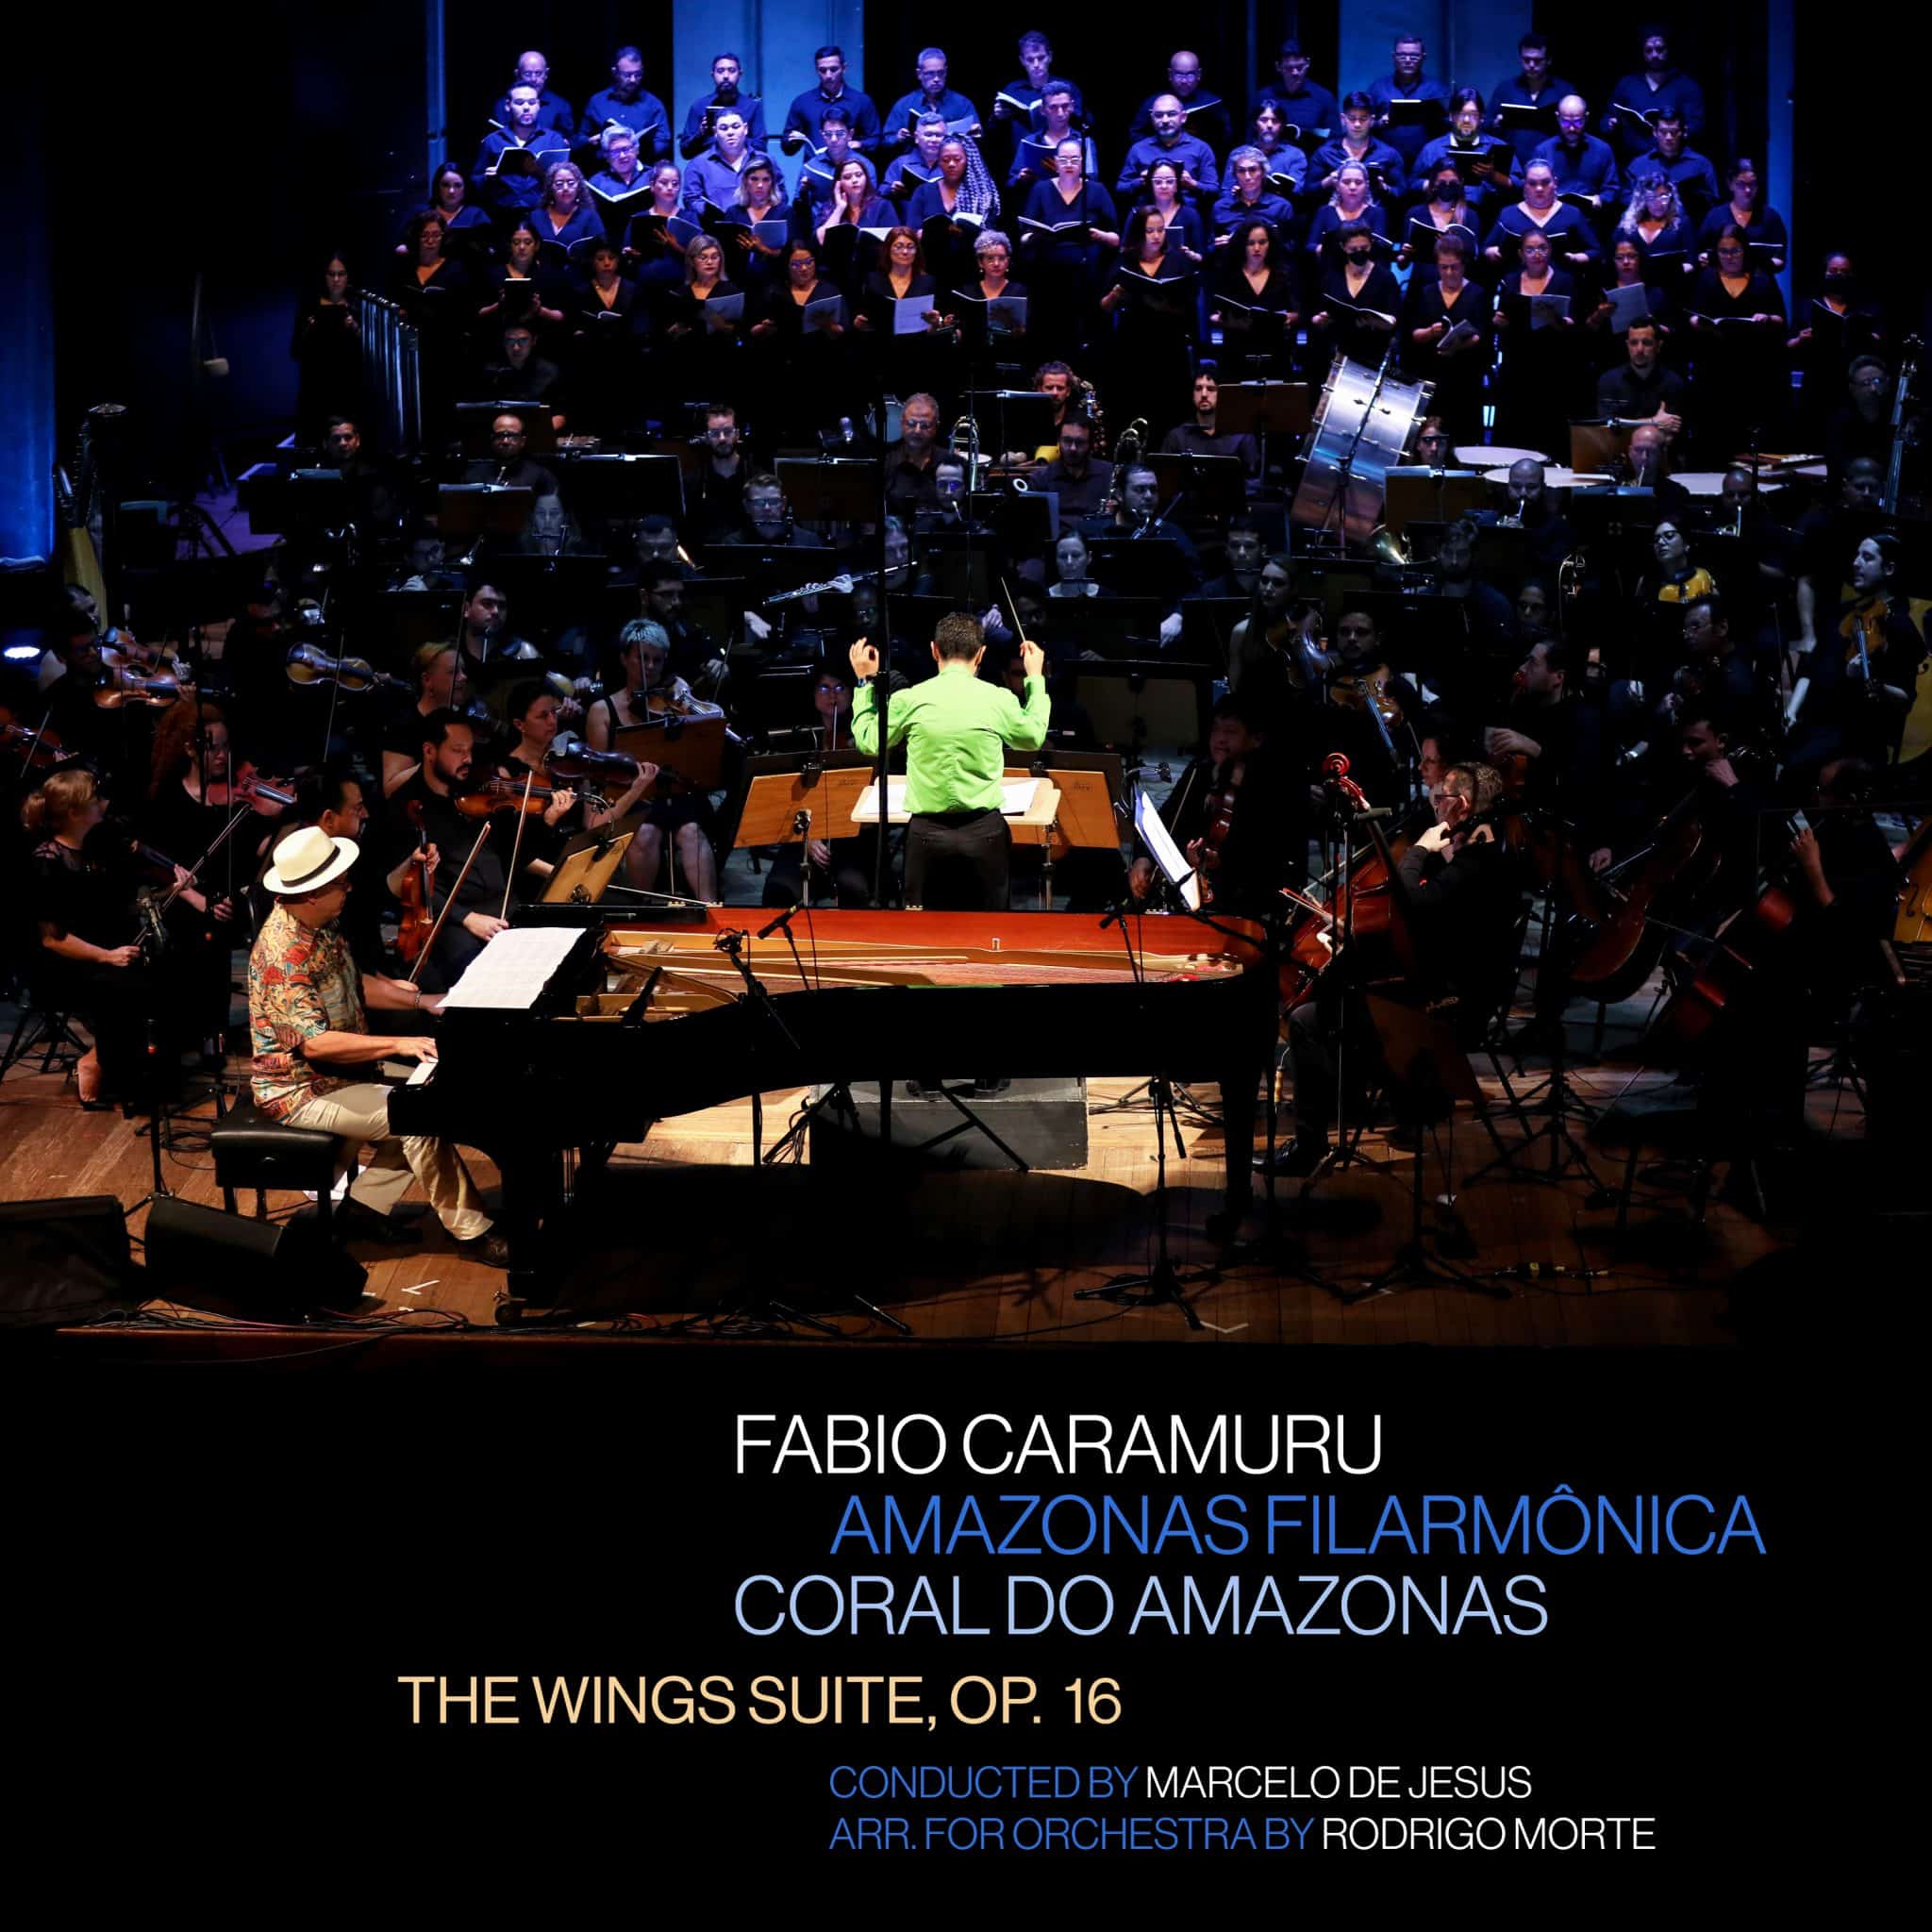 revistaprosaversoearte.com - Álbum 'The Wings Suite, Op. 16', de Fabio Caramuru, selo Azul Music